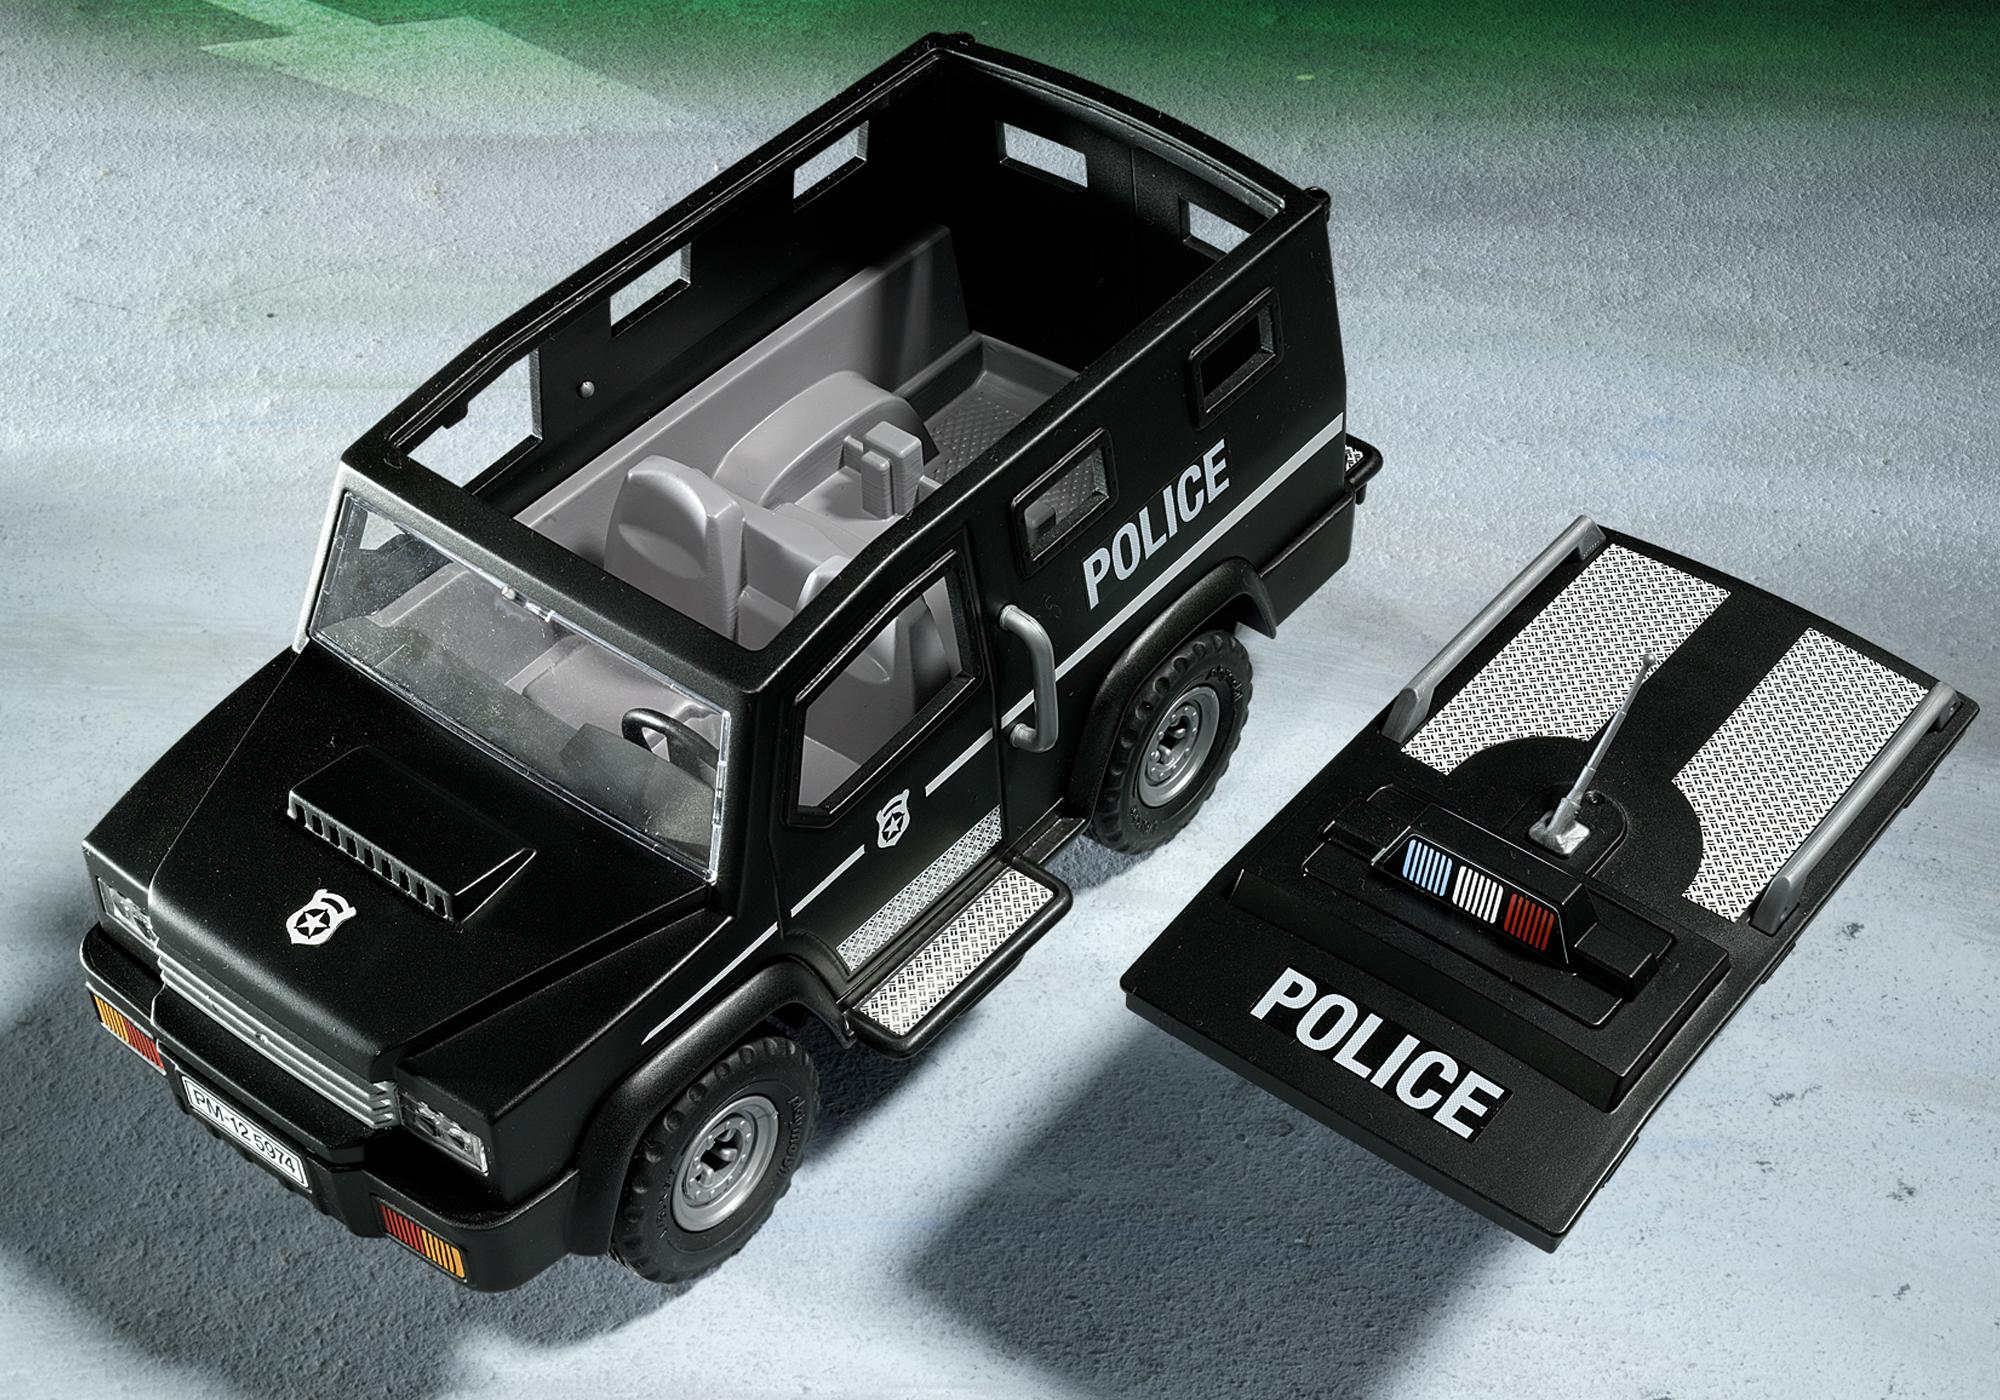 Юнит машина. Playmobil 5674 Tactical Unit Police car. Полицейский броневик Playmobil. Playmobil Polizei машинка полиция. Плеймобил Хаммер н1.